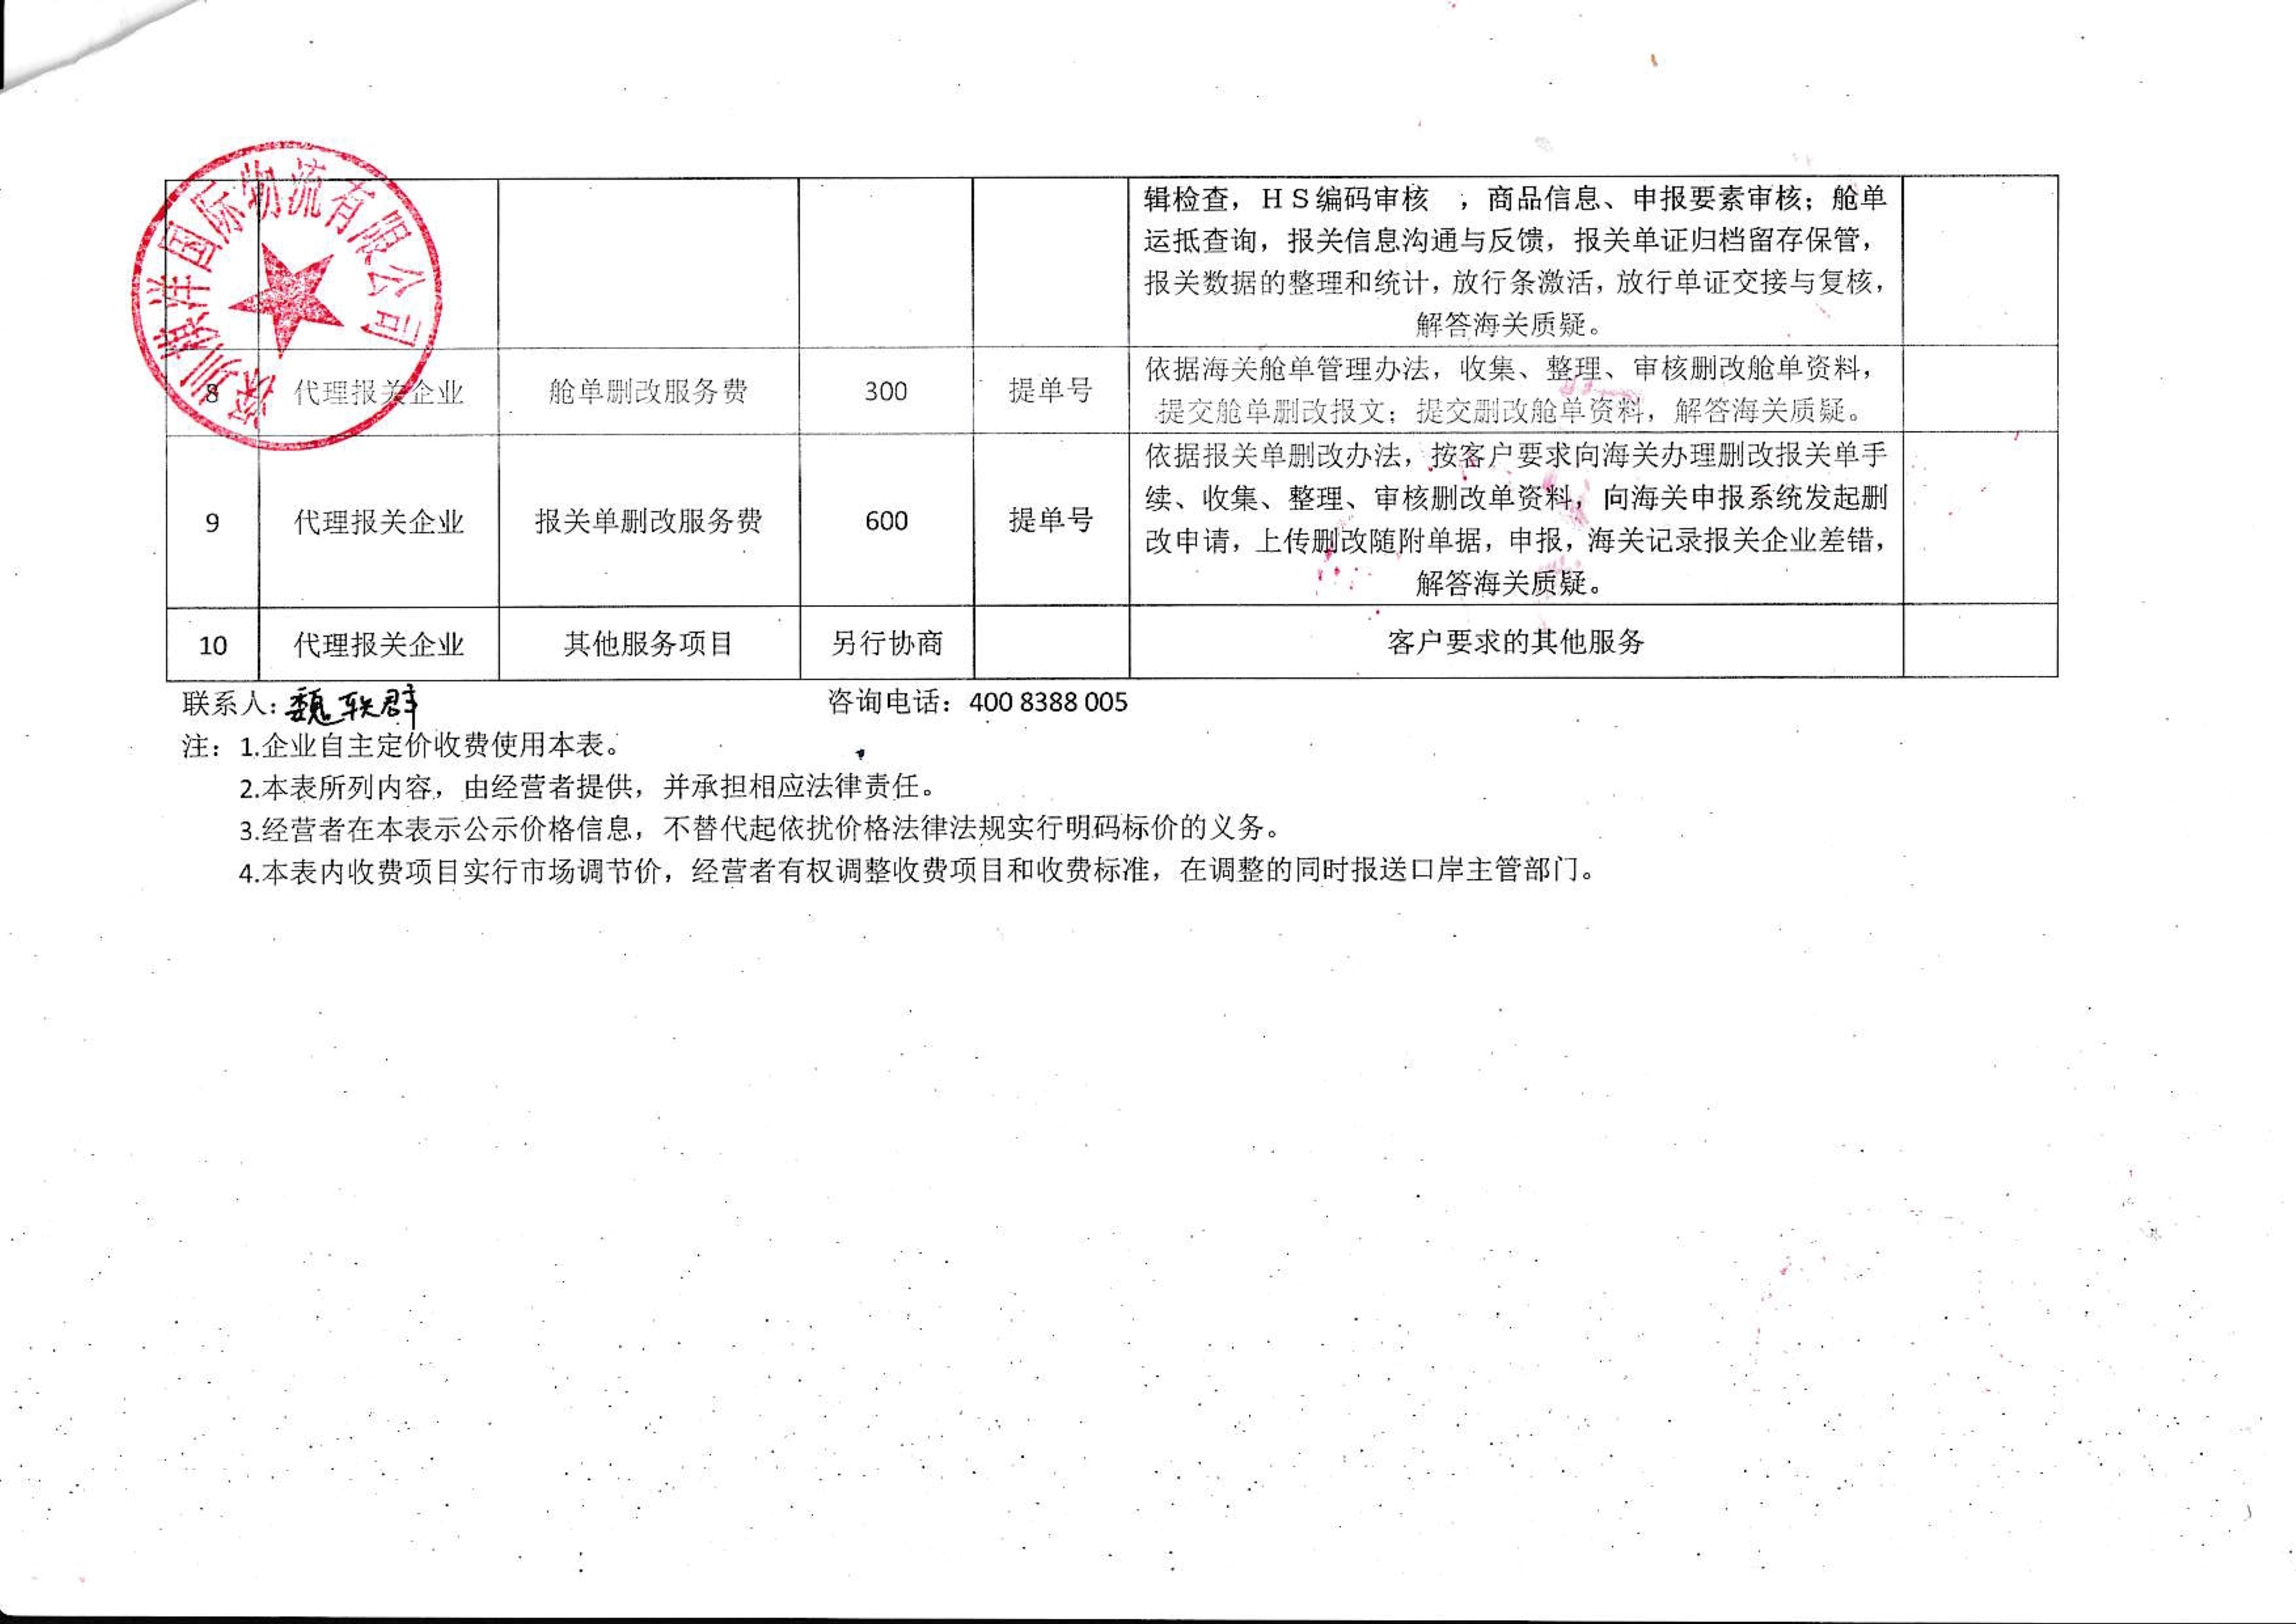 深圳棋洋国际物流有限公司收费目录清单_2.jpg